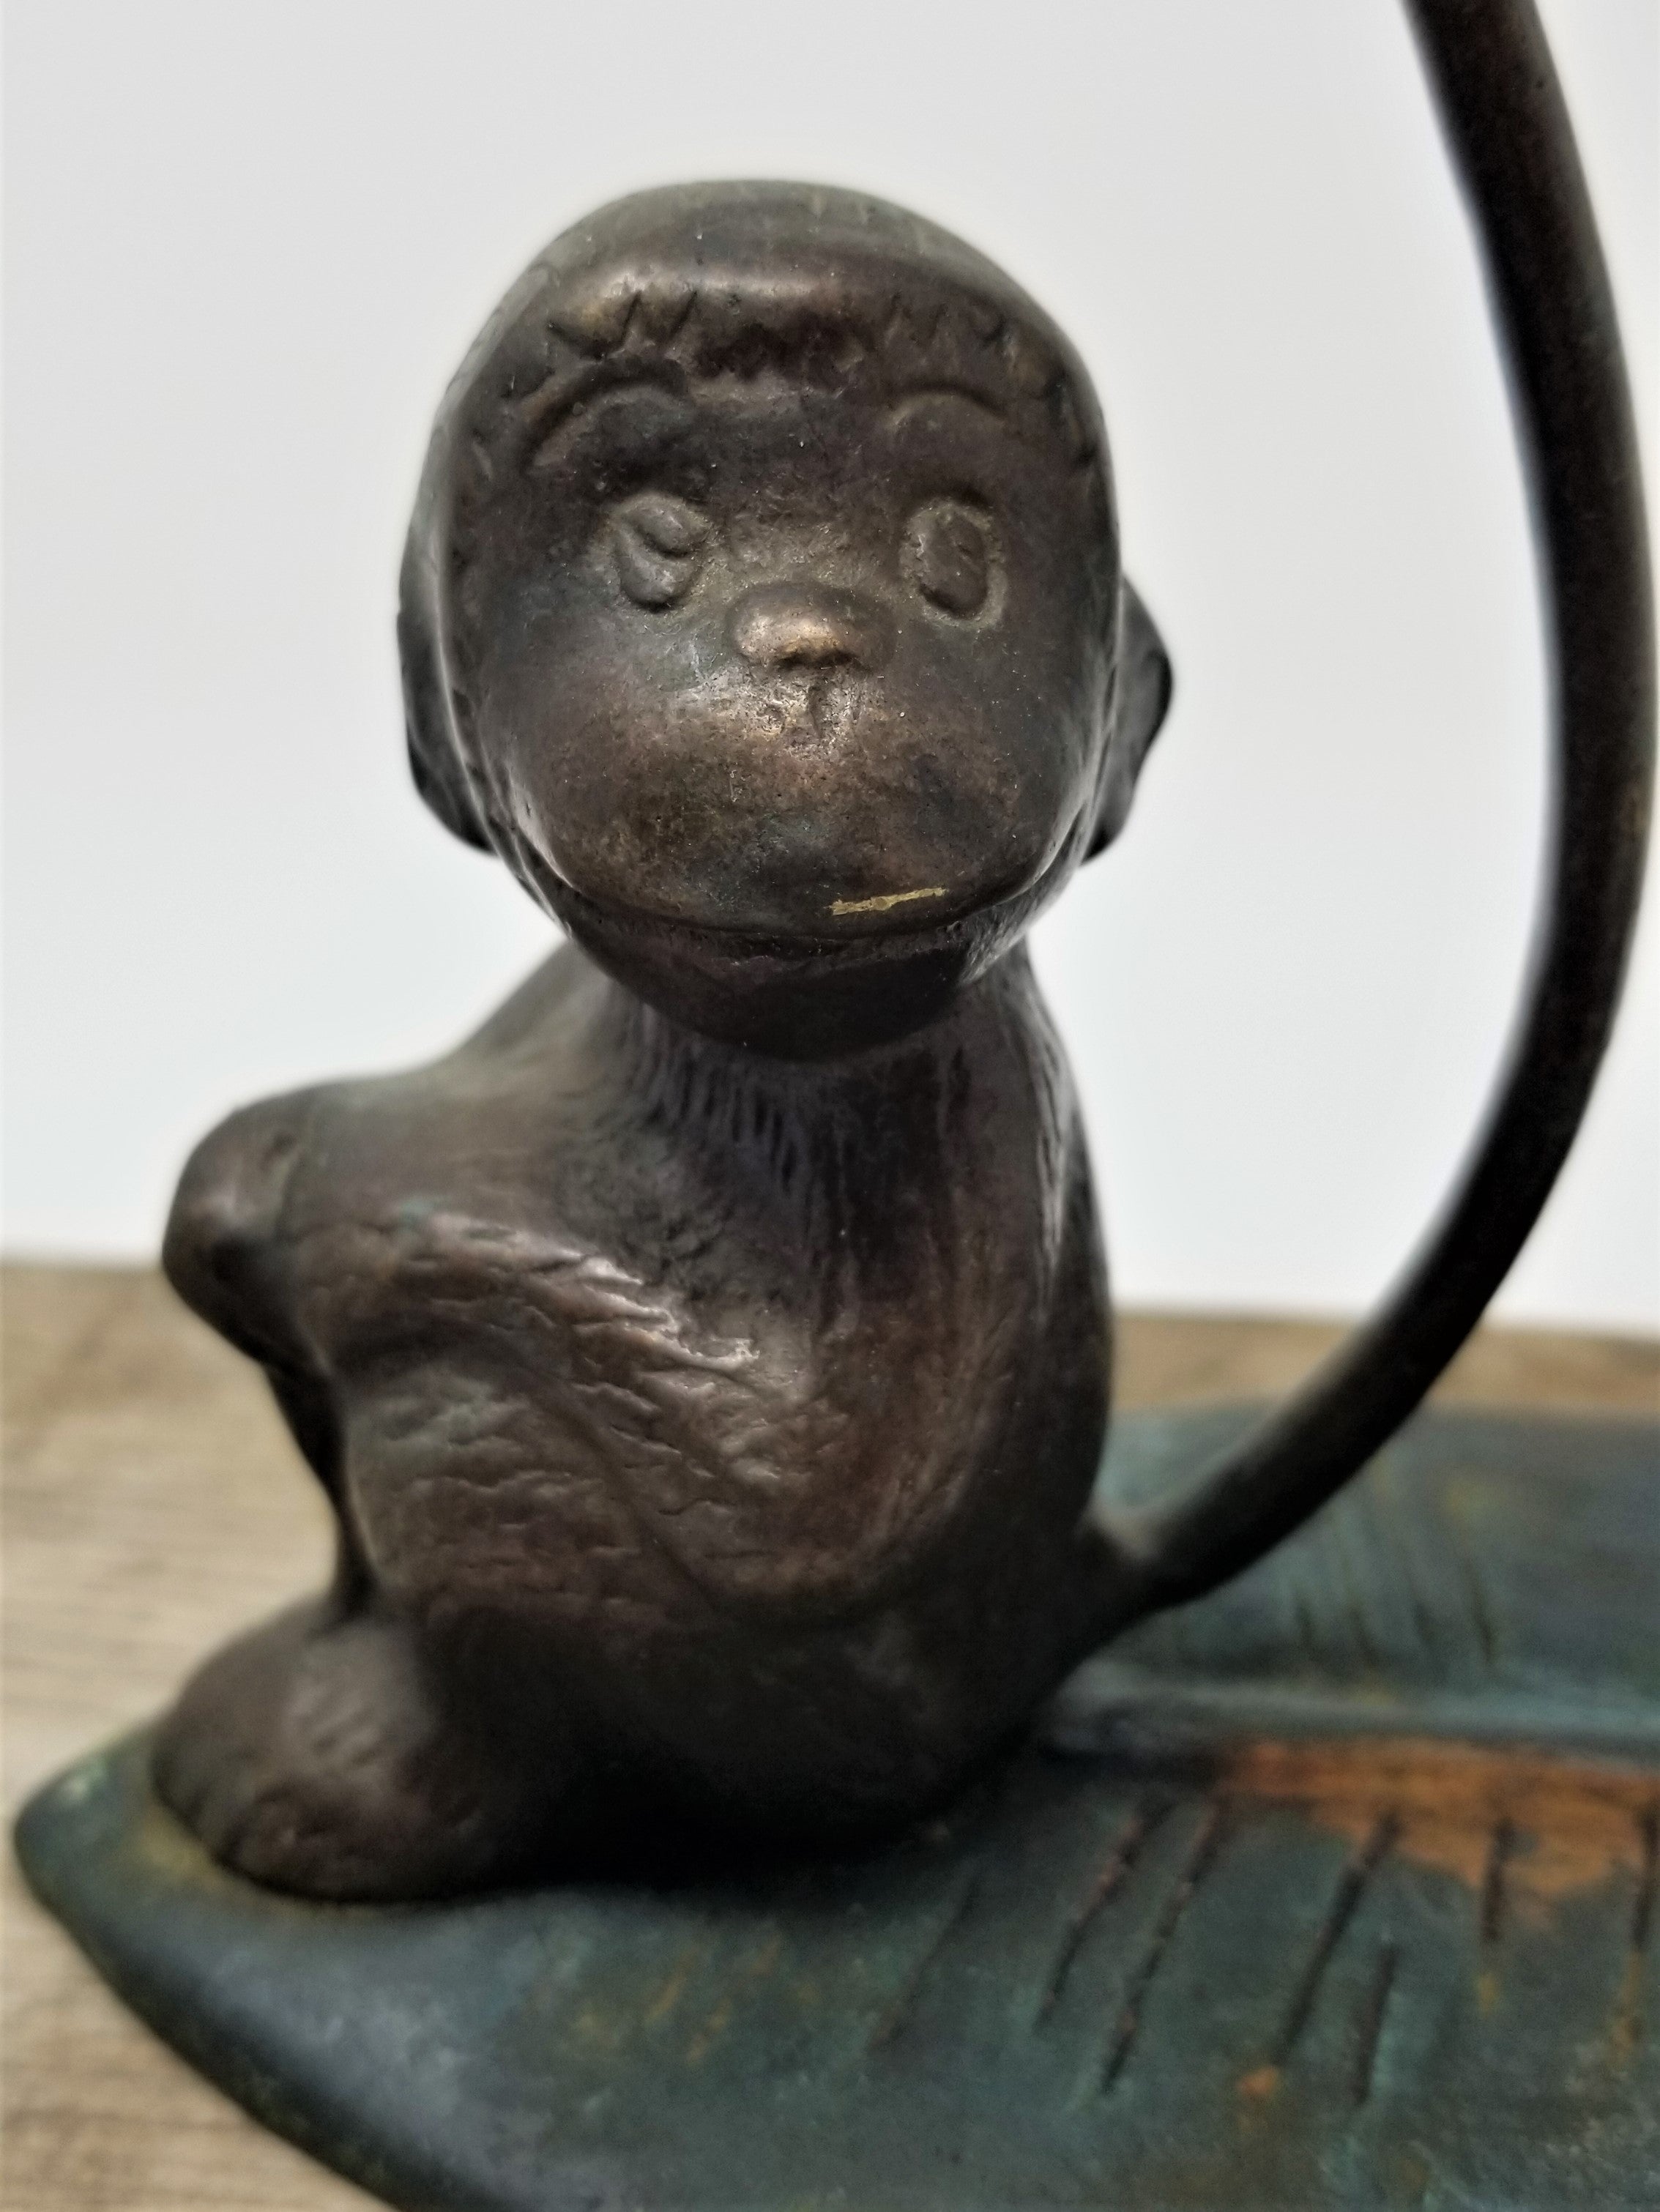 The cutest Metal Monkey Sitting on a Leaf Figurine